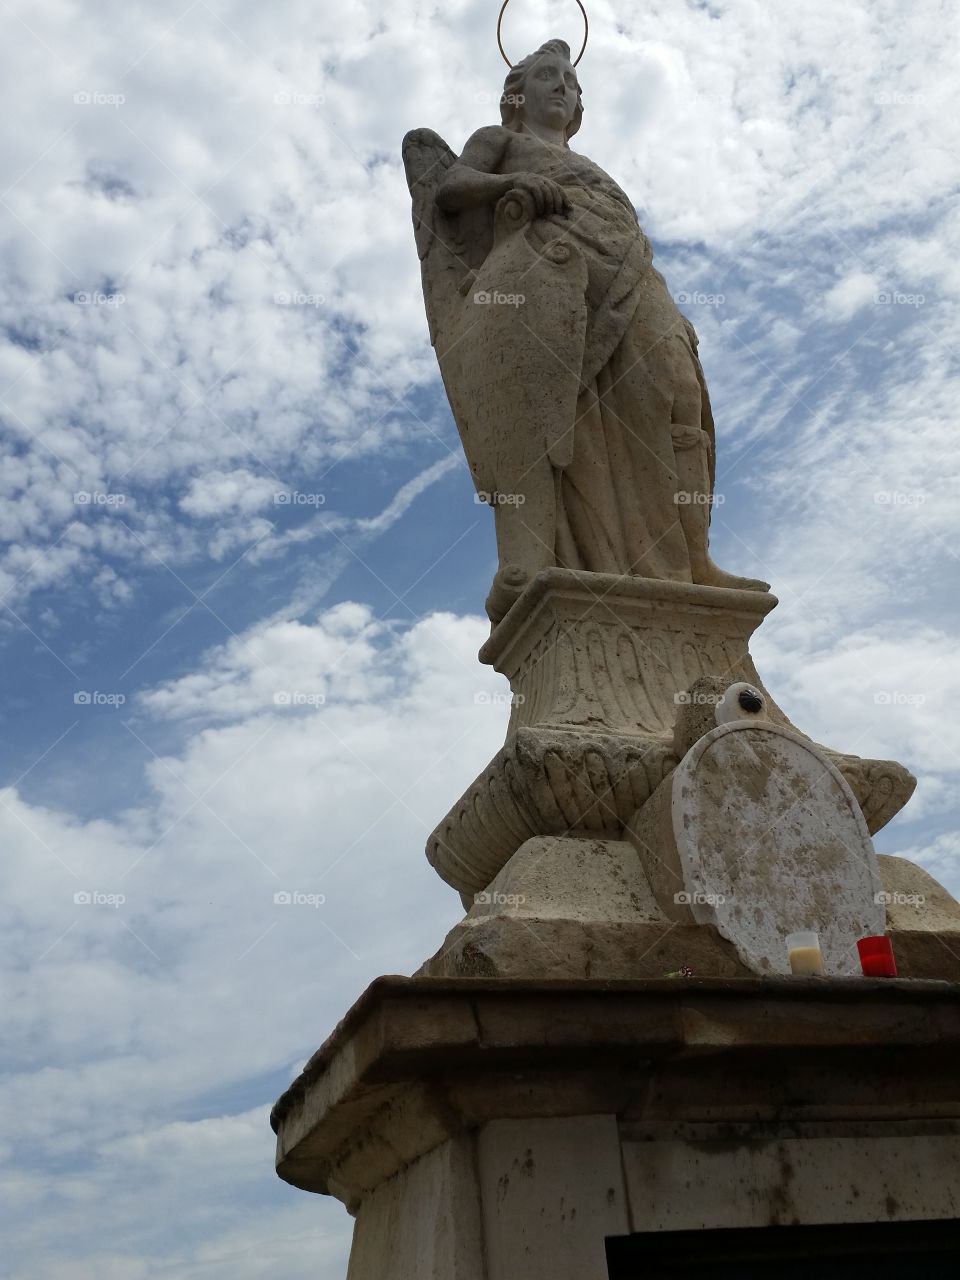 Archangel Raphael, Córdoba protector. Córdoba, a city of faith